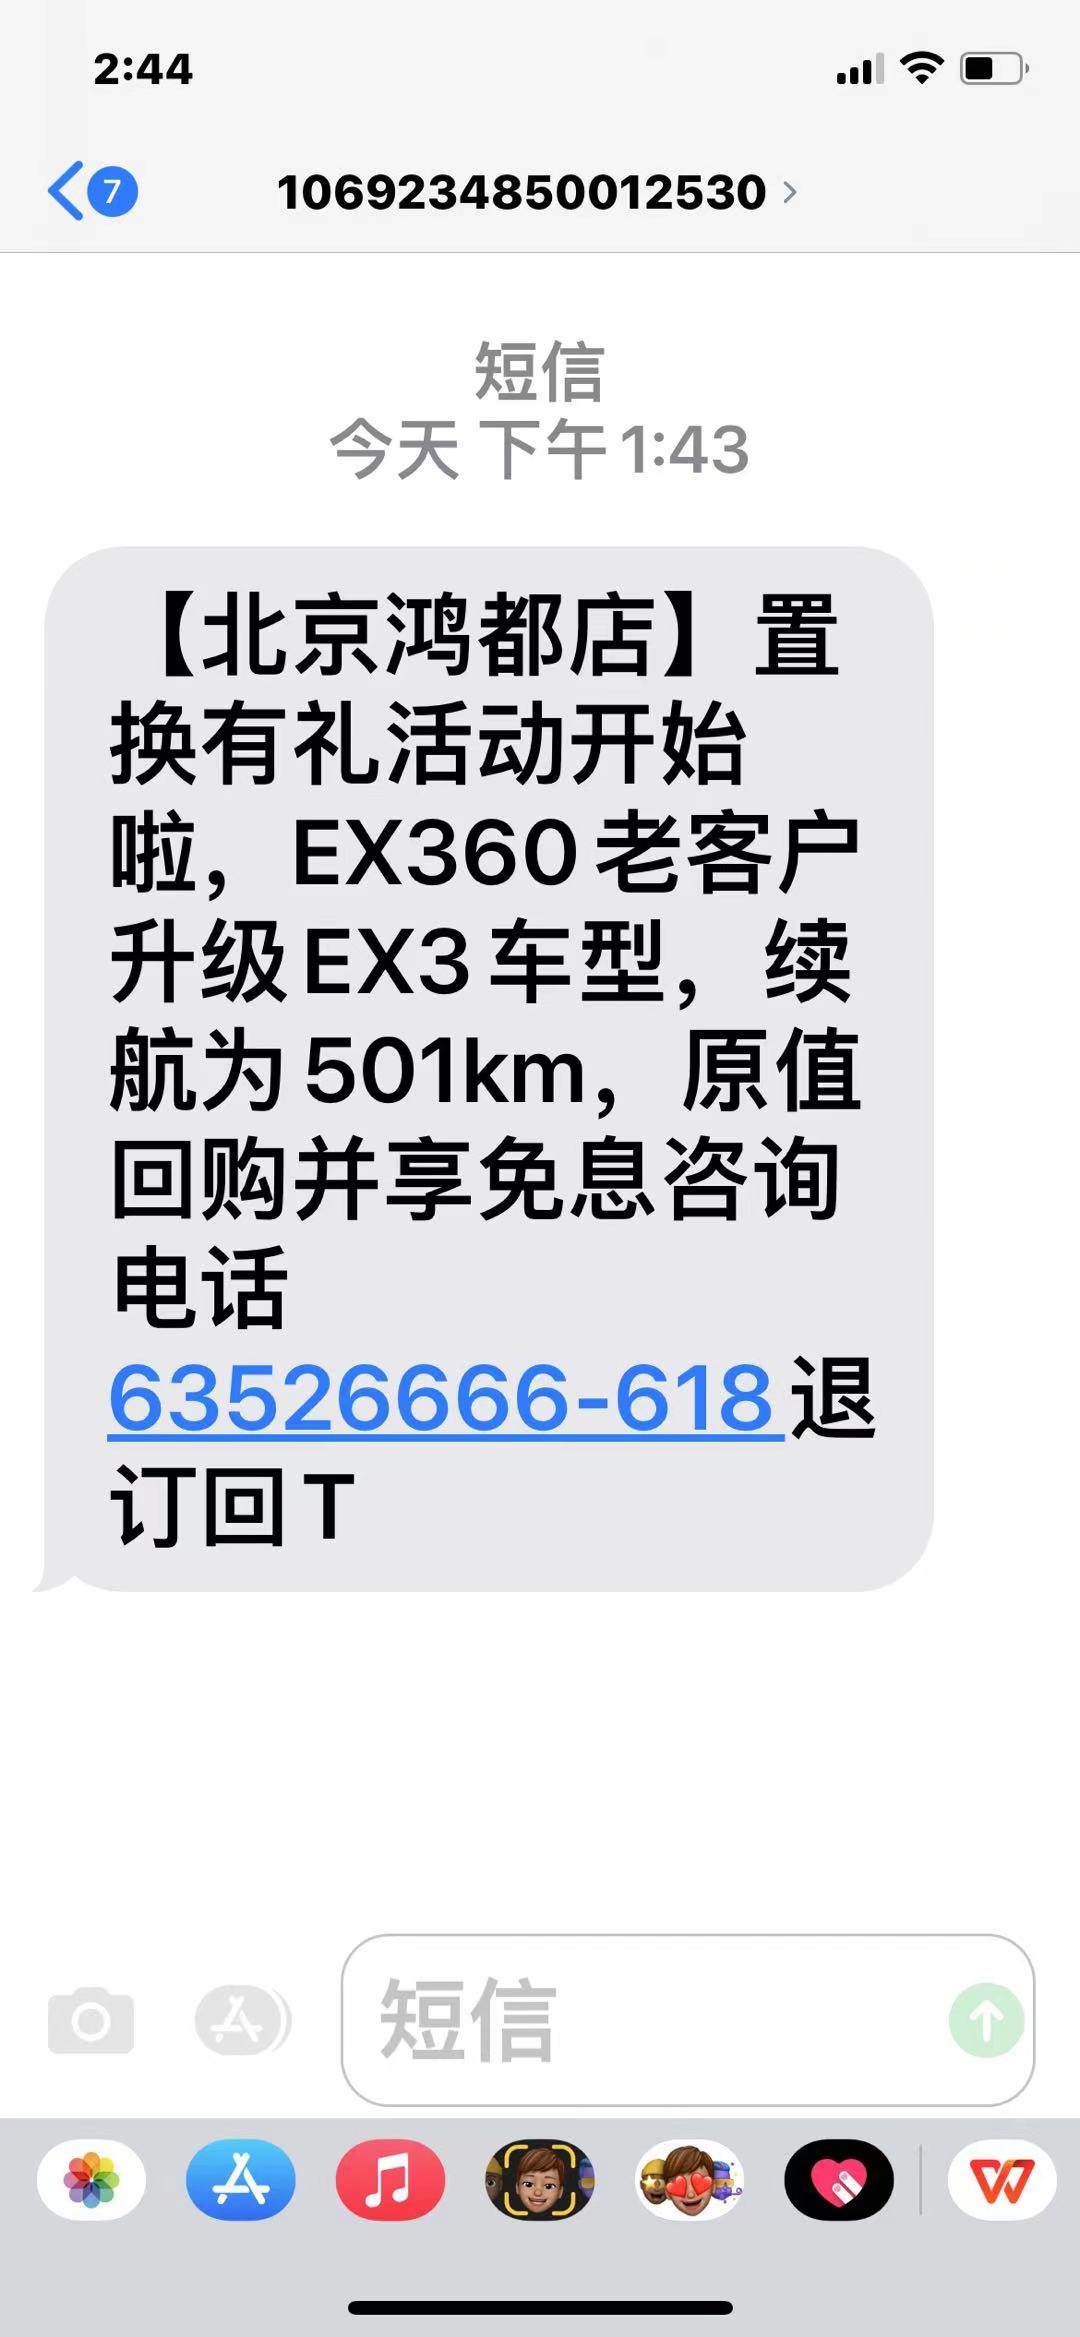 北京北京EX3 北汽在搞活动，ex360加价换ex3，我想了解一下ex3充电情况。现在开是北汽ex360感觉充电的问题太